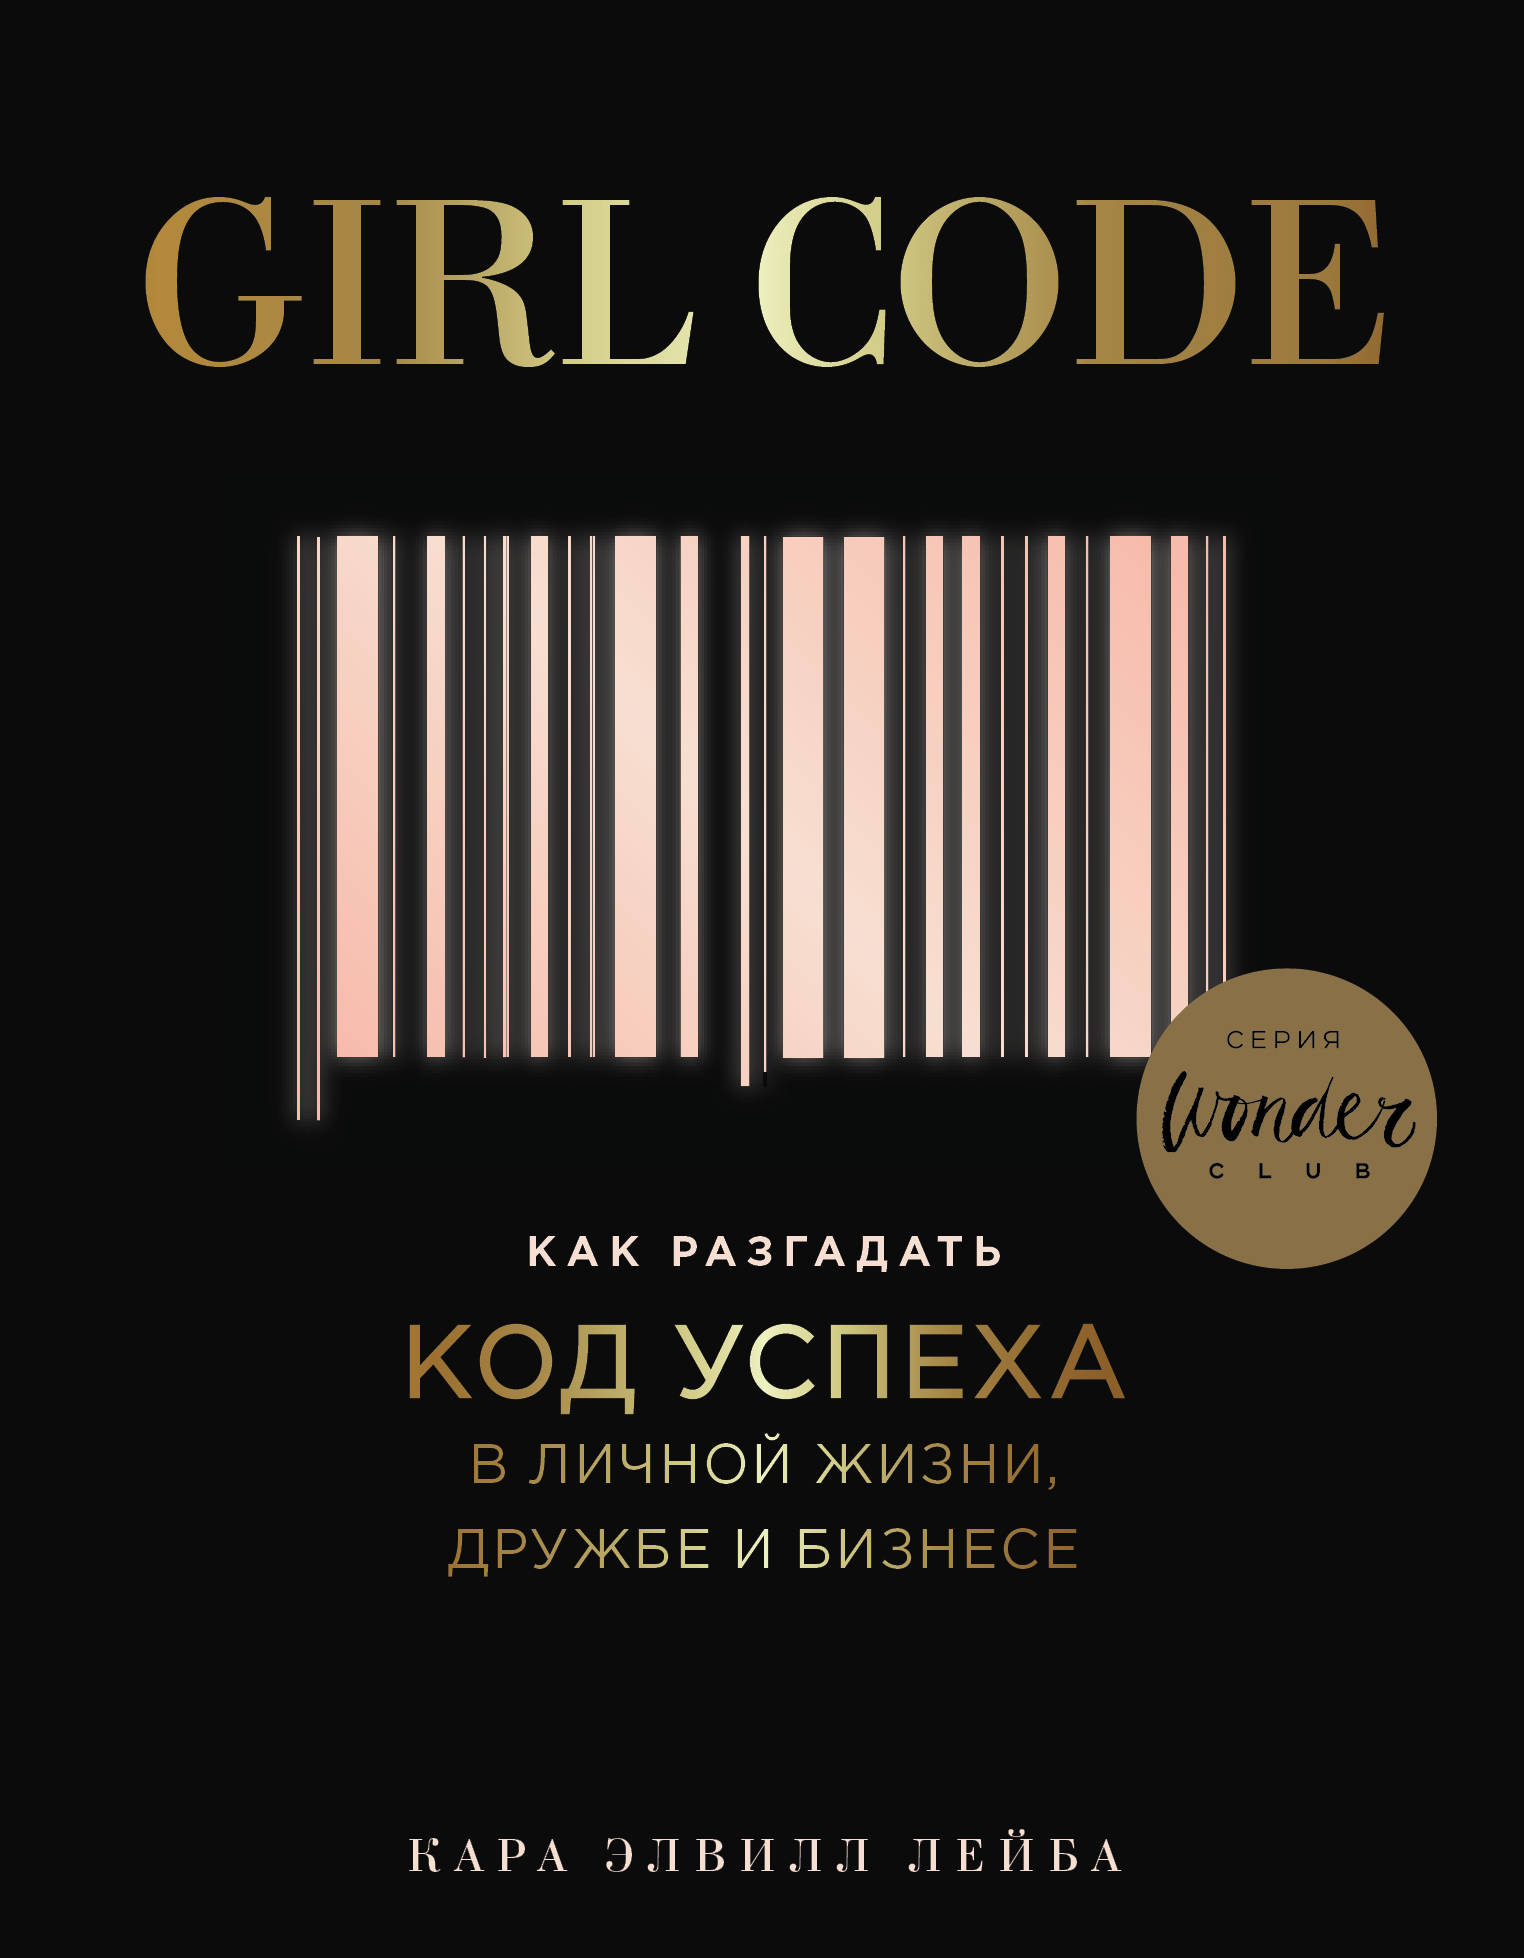 Girl Code.       ,   